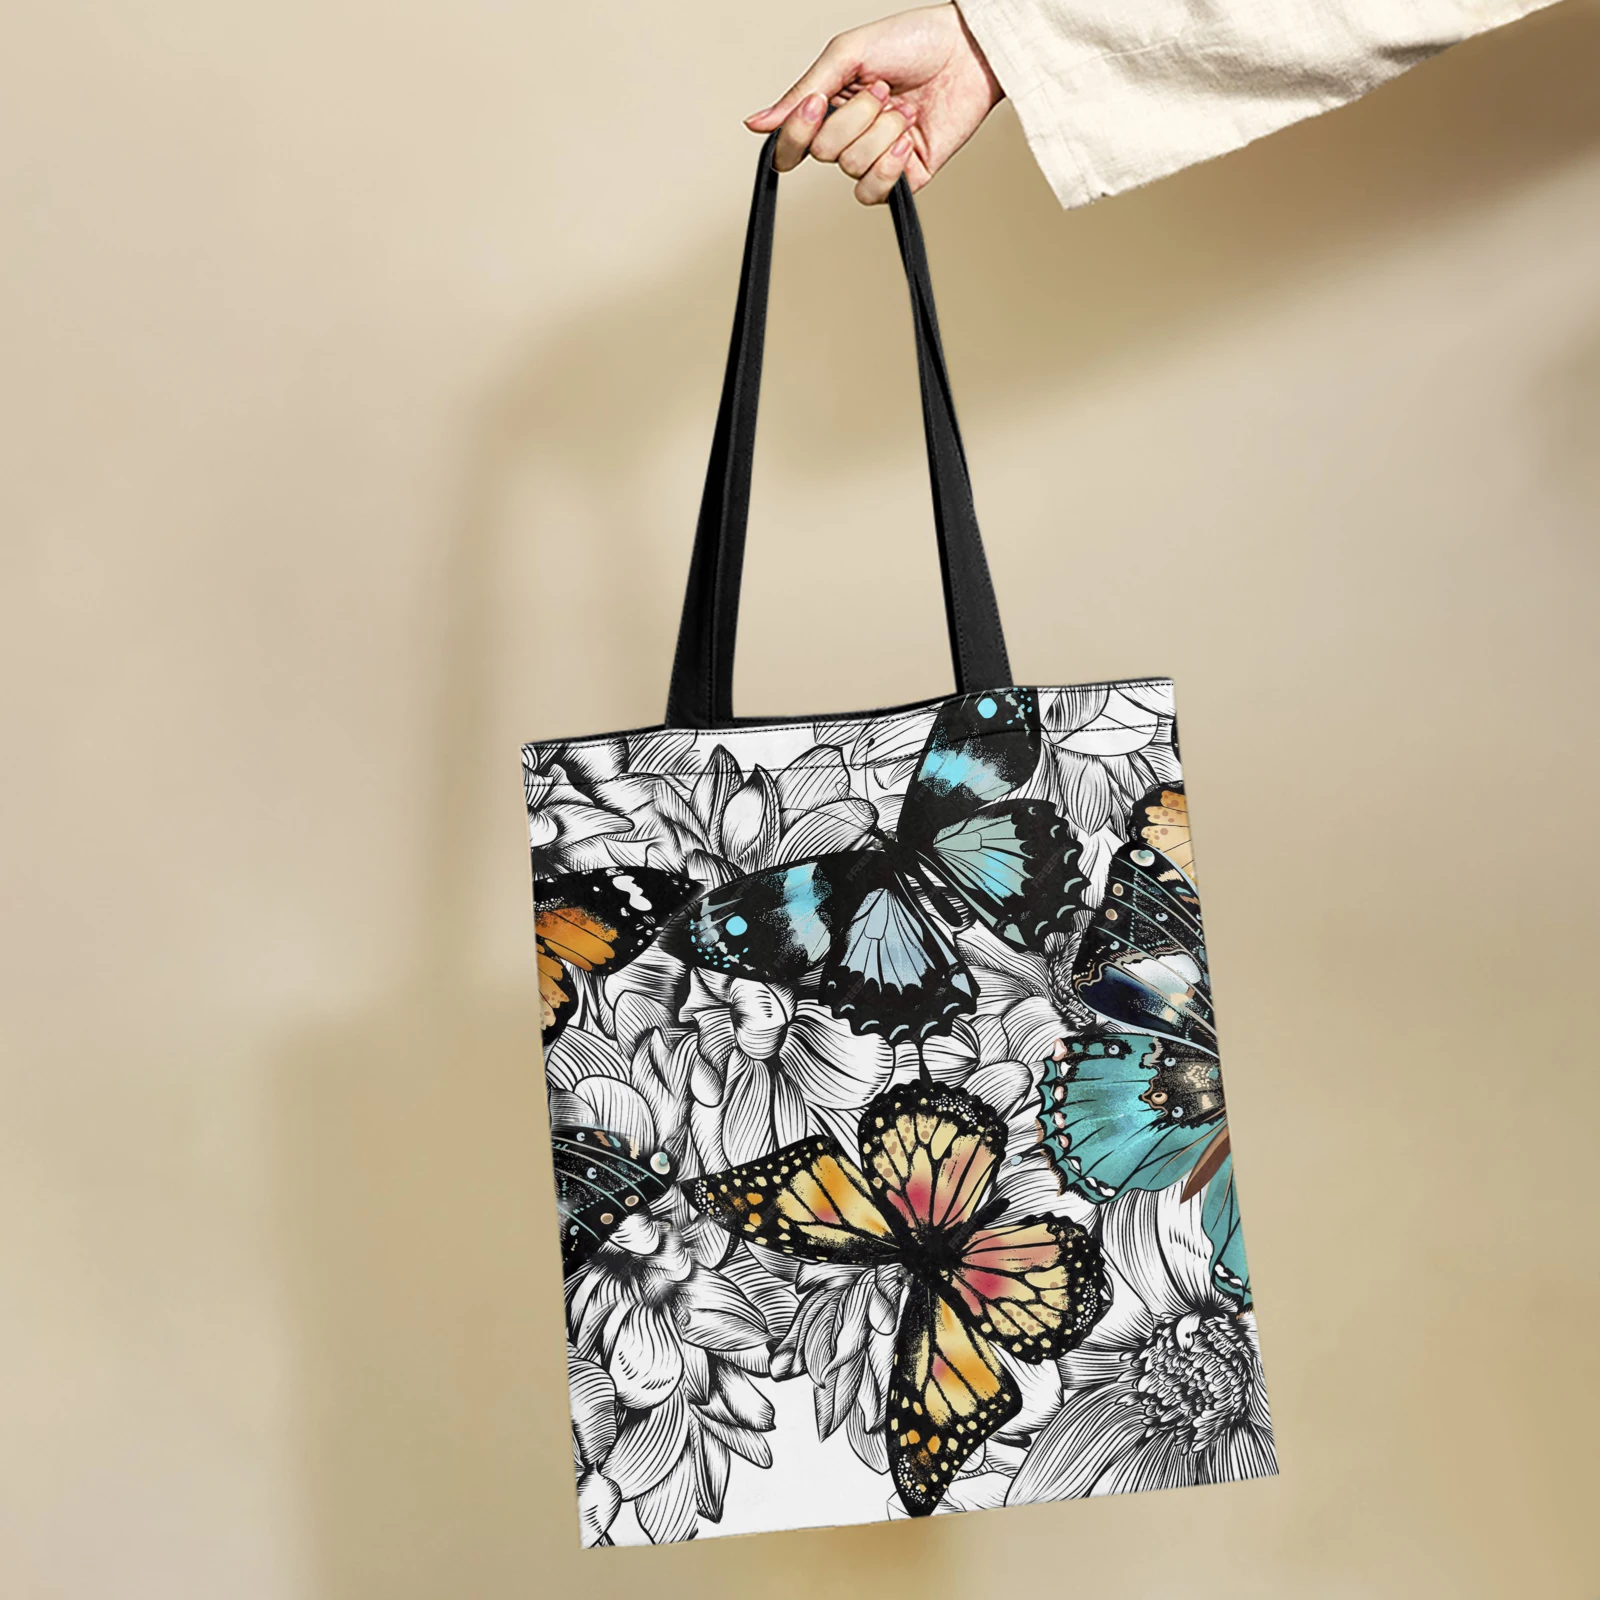 Yikeluo Monarch, сумочка с бабочкой для девочек, подарок на день рождения, экологичная хозяйственная сумка с цветочным принтом в стиле бохо, сумка-тоут с бабочкой